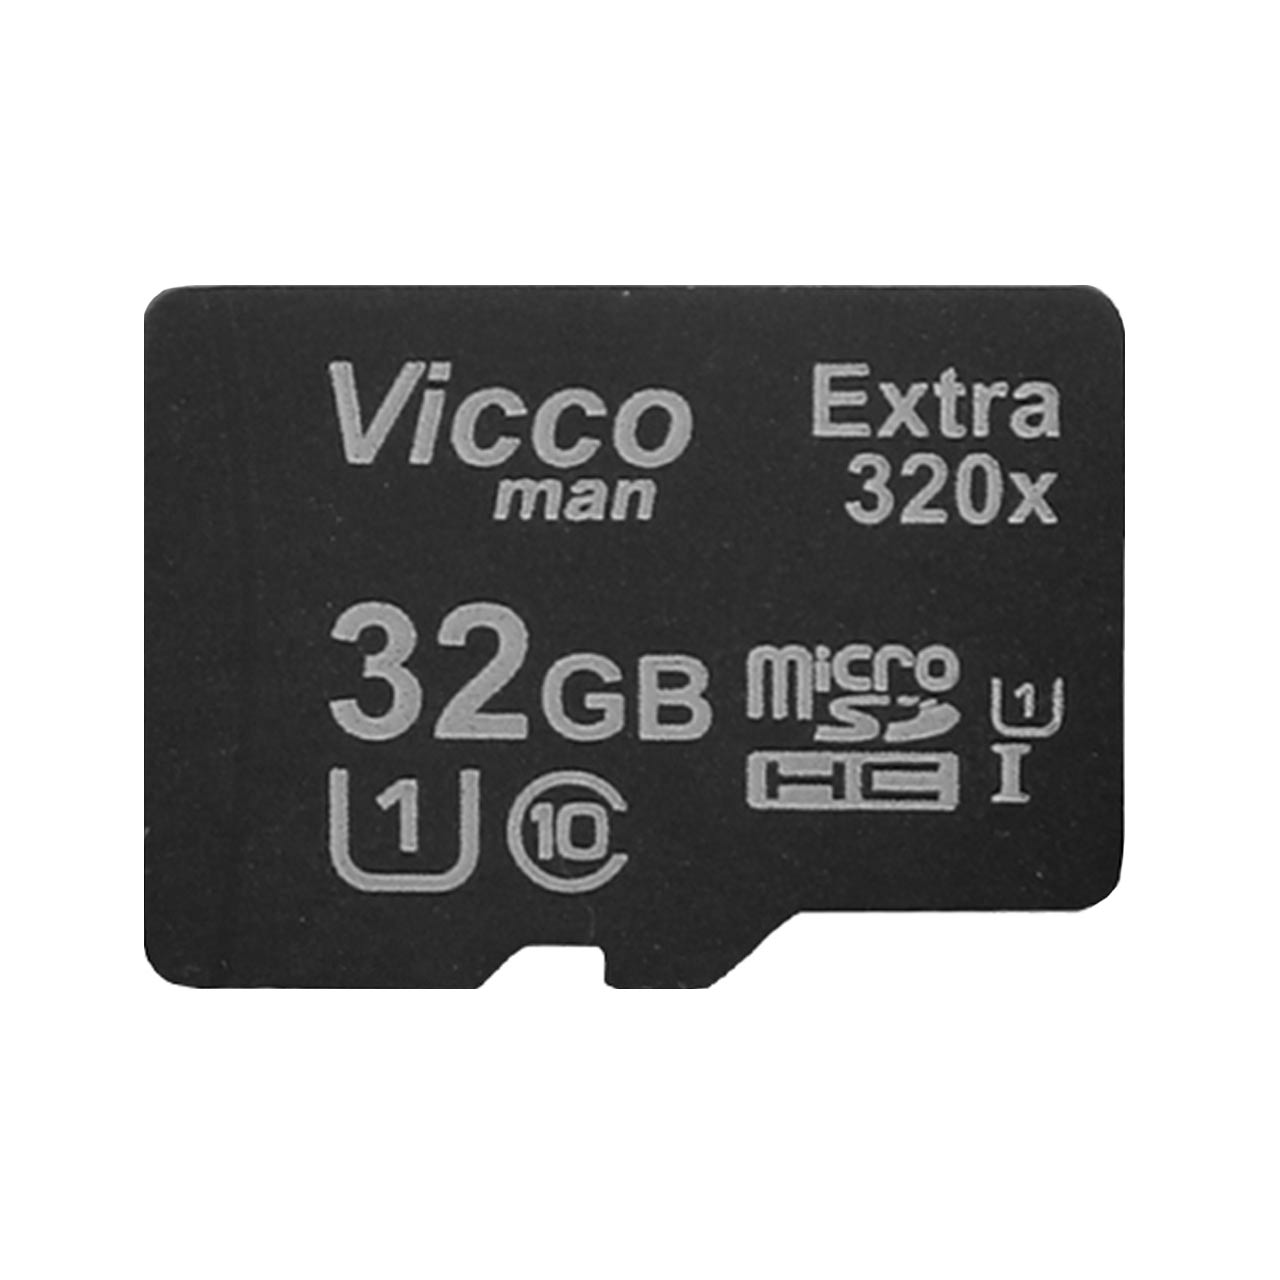 رم  ViccoMan microSDHC-I U1 Class10 Extra 320X-32GB - قیمت: ۱۱۵۰۰۰ تومان